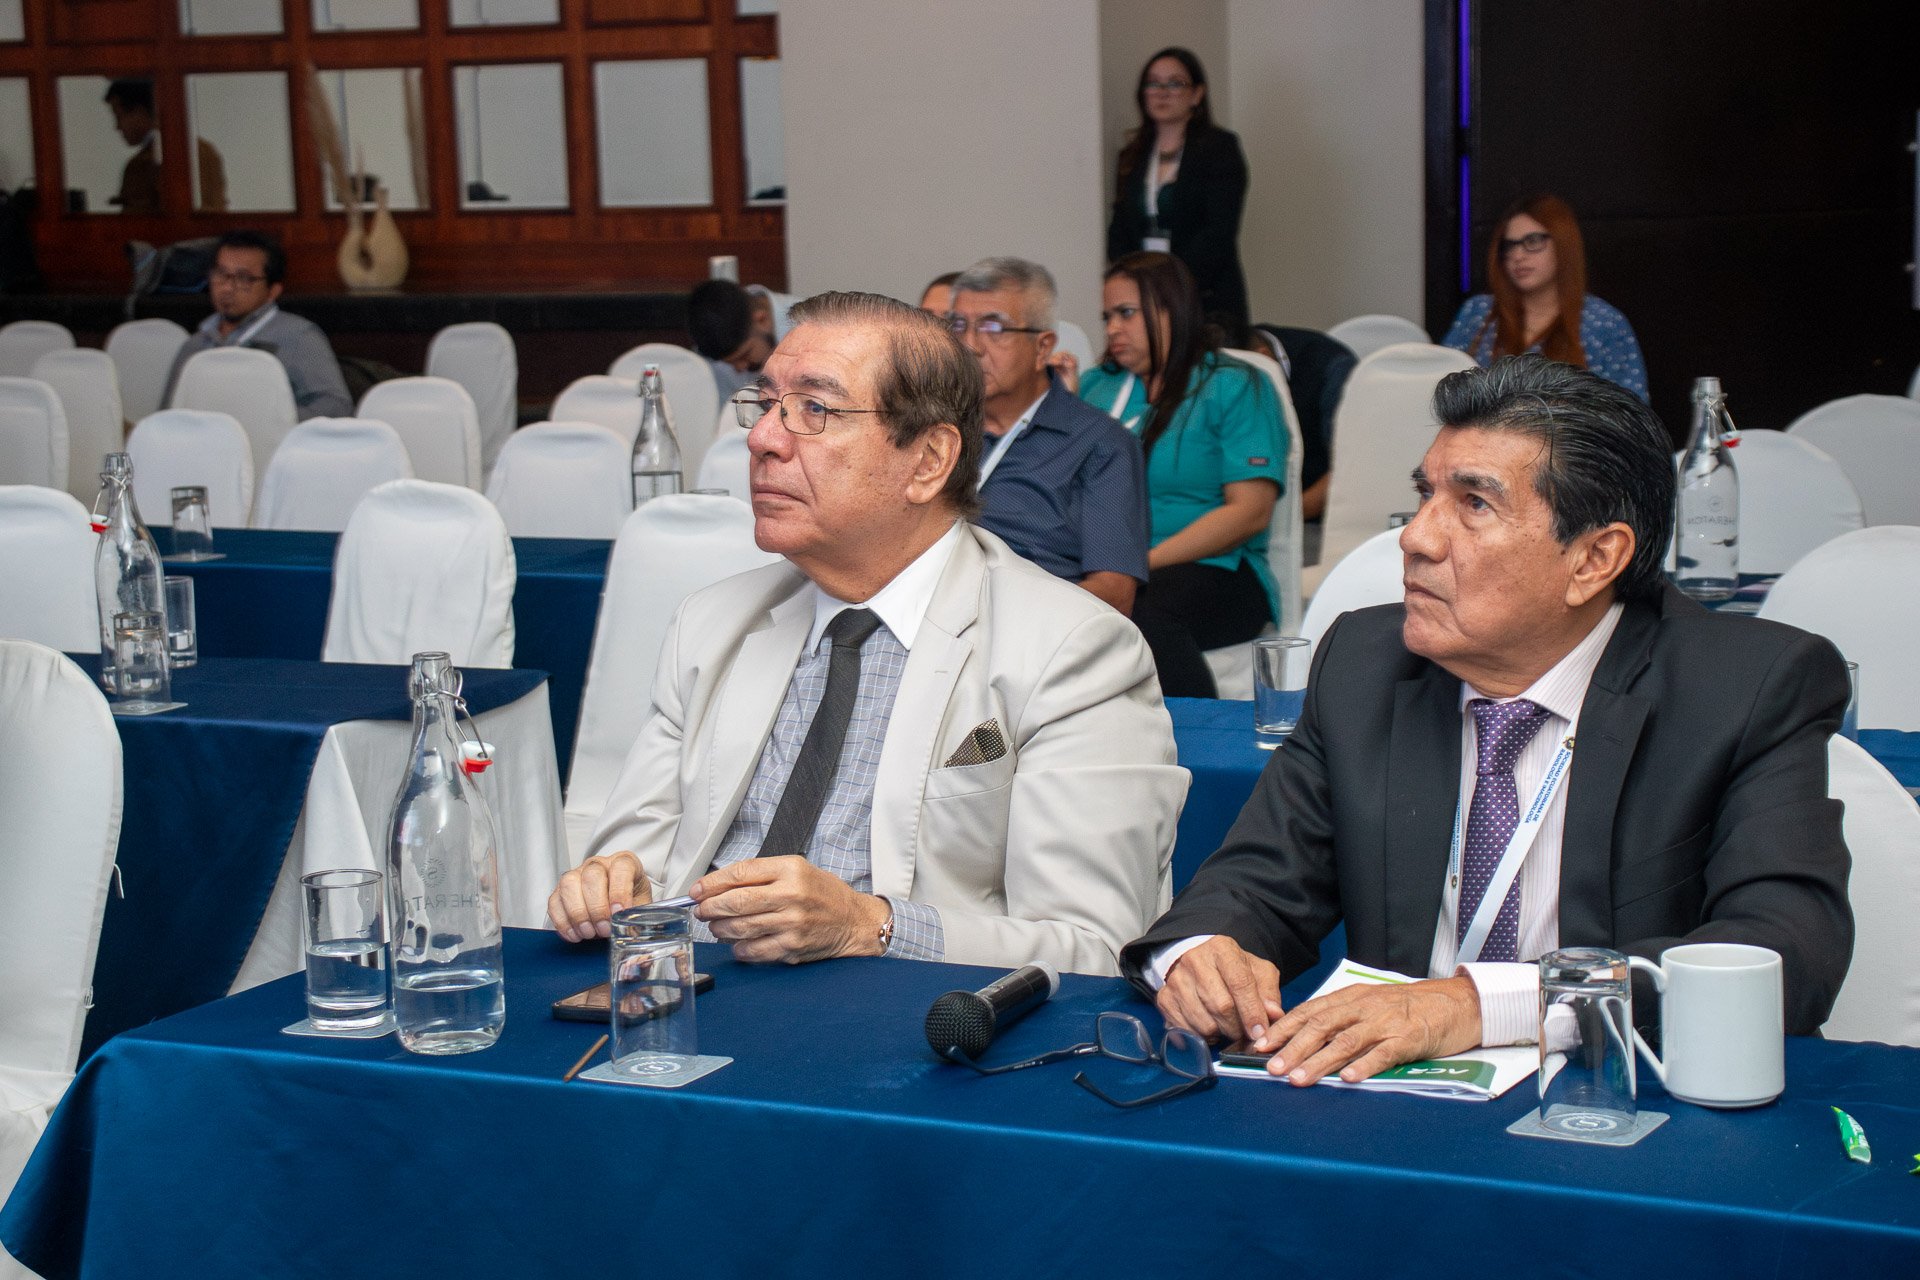  Los Doctores Publio Vargas y Mario Rendón como parte del jurado en el concurso nacional  de temas Libres del XXIII Congreso de Radiología e Imagenología 